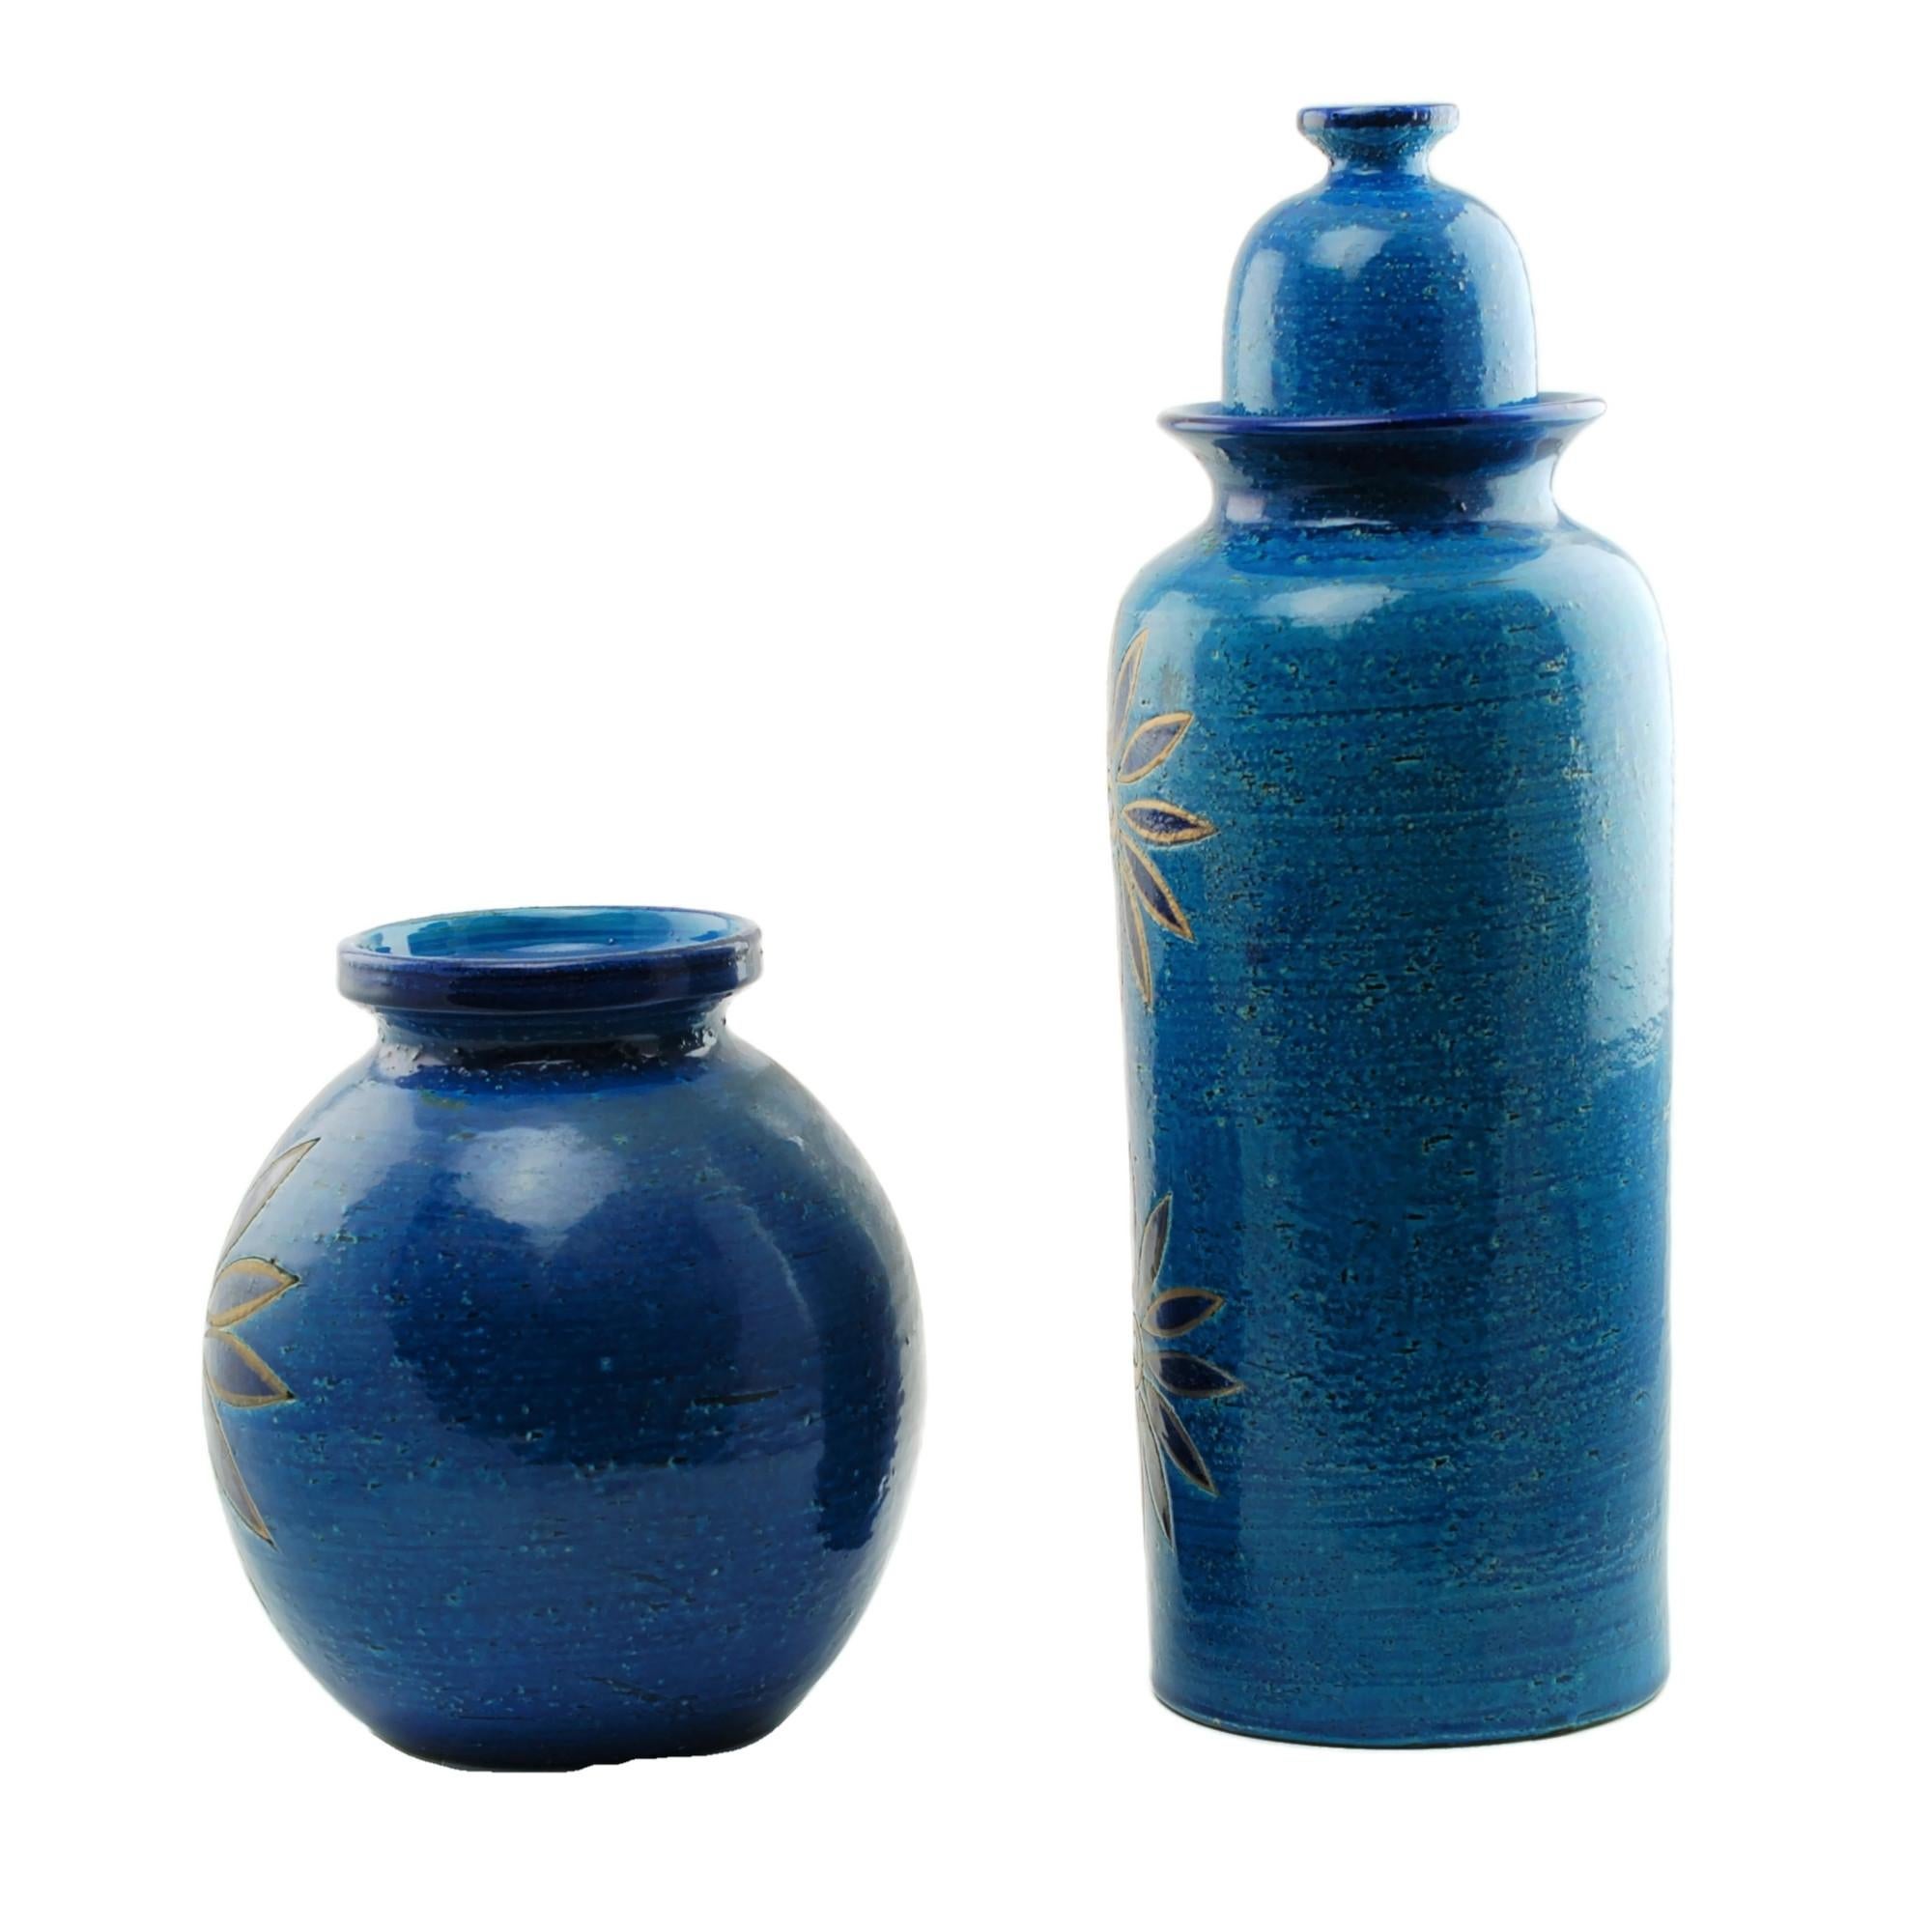 Diese Keramikvase und der Deckelkrug wurden von Aldo Londi, dem künstlerischen Leiter von Bitossi ceramiche in Montelupo, Italien, entworfen. Beide Stücke weisen große stilisierte Blumen auf und sind mit Bitossis reicher blauer Rimini-Glasur